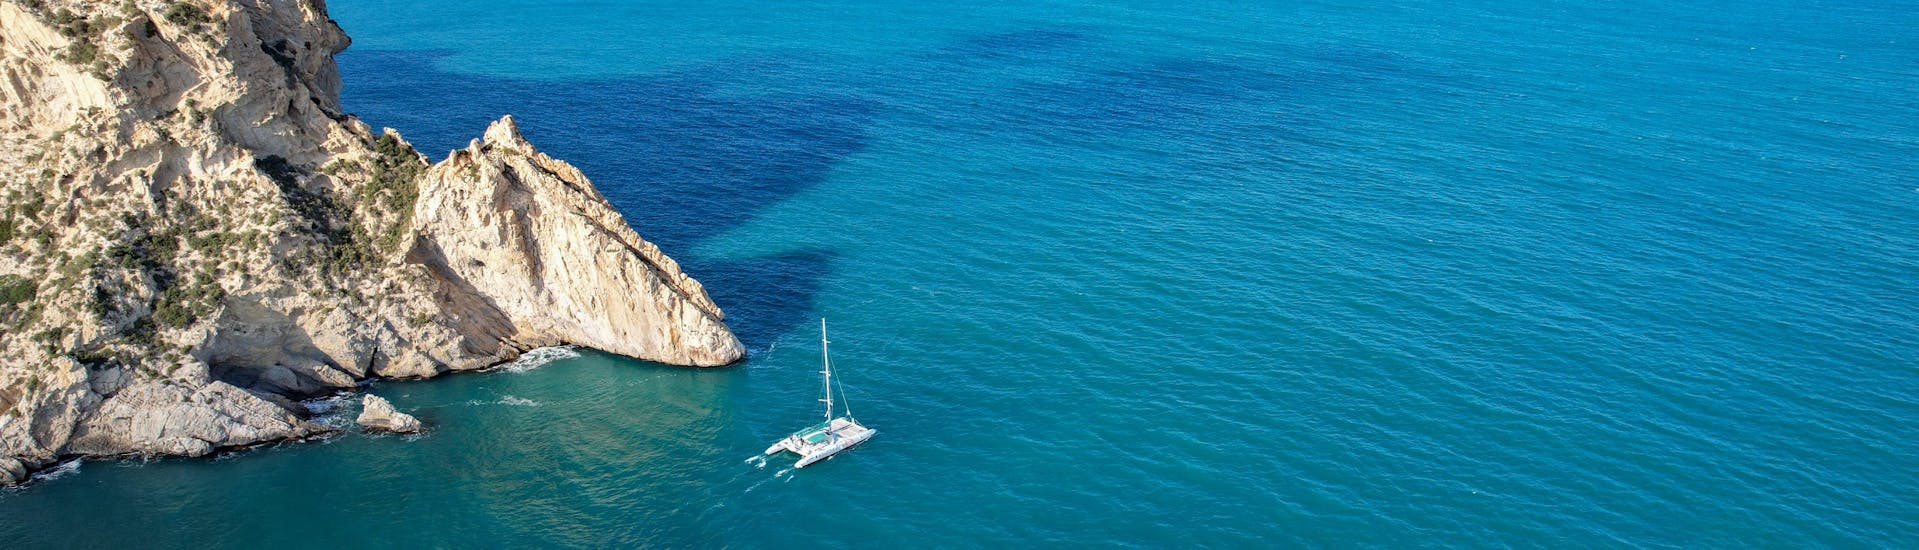 Balade en catamaran Calpe - Cala El Racó avec Visites touristiques.